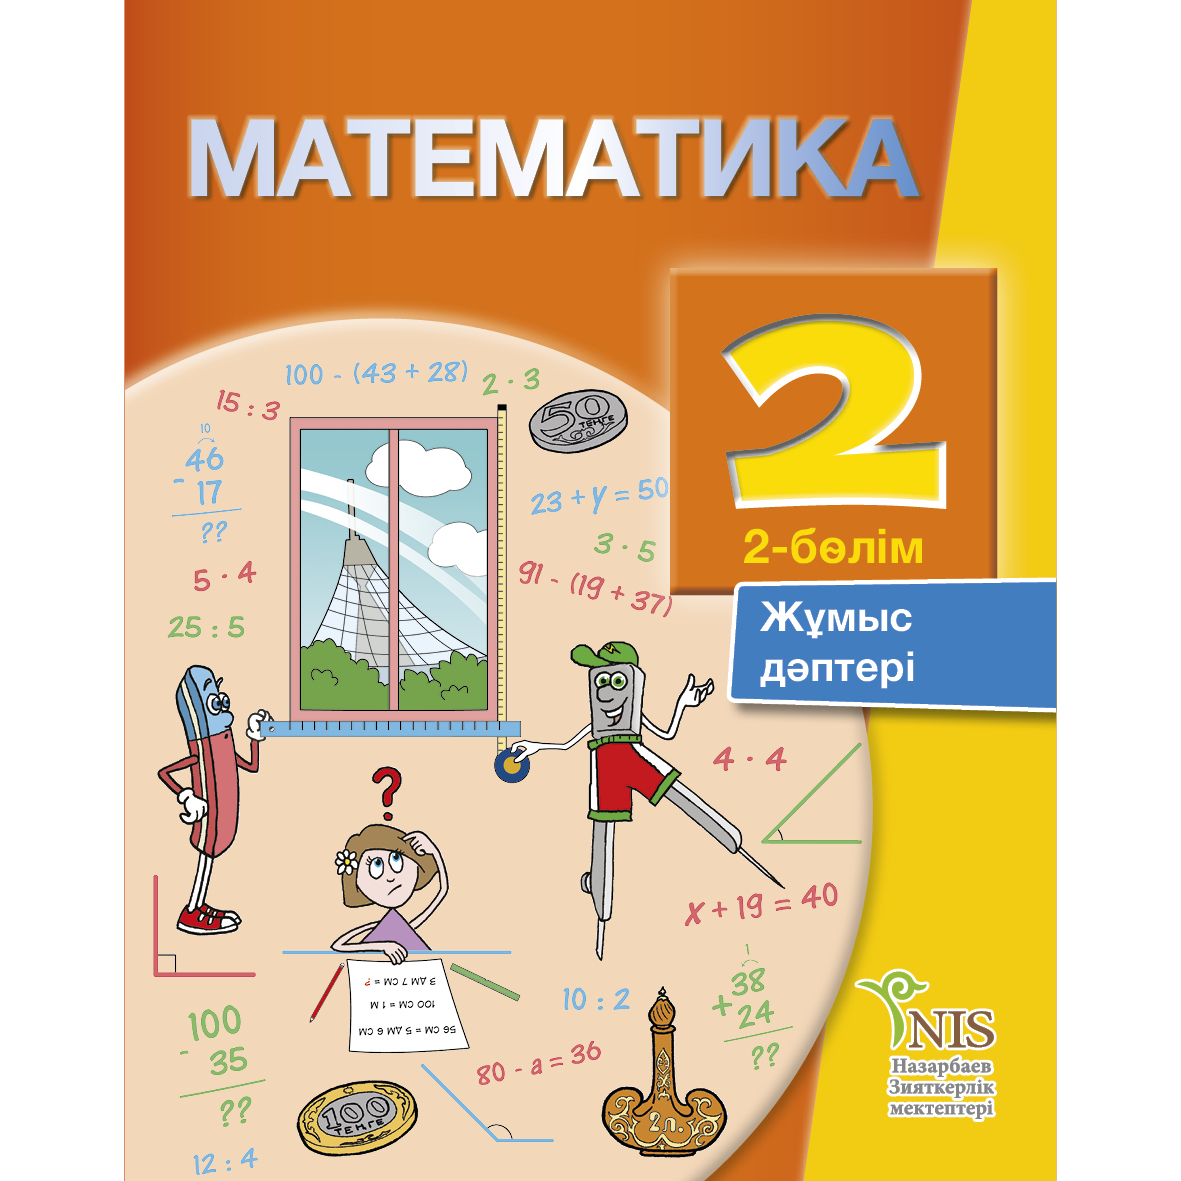 Учебник по математике презентация. Книга математика. Учебник математики. Математика 2 сынып. Обложка для книги математика.